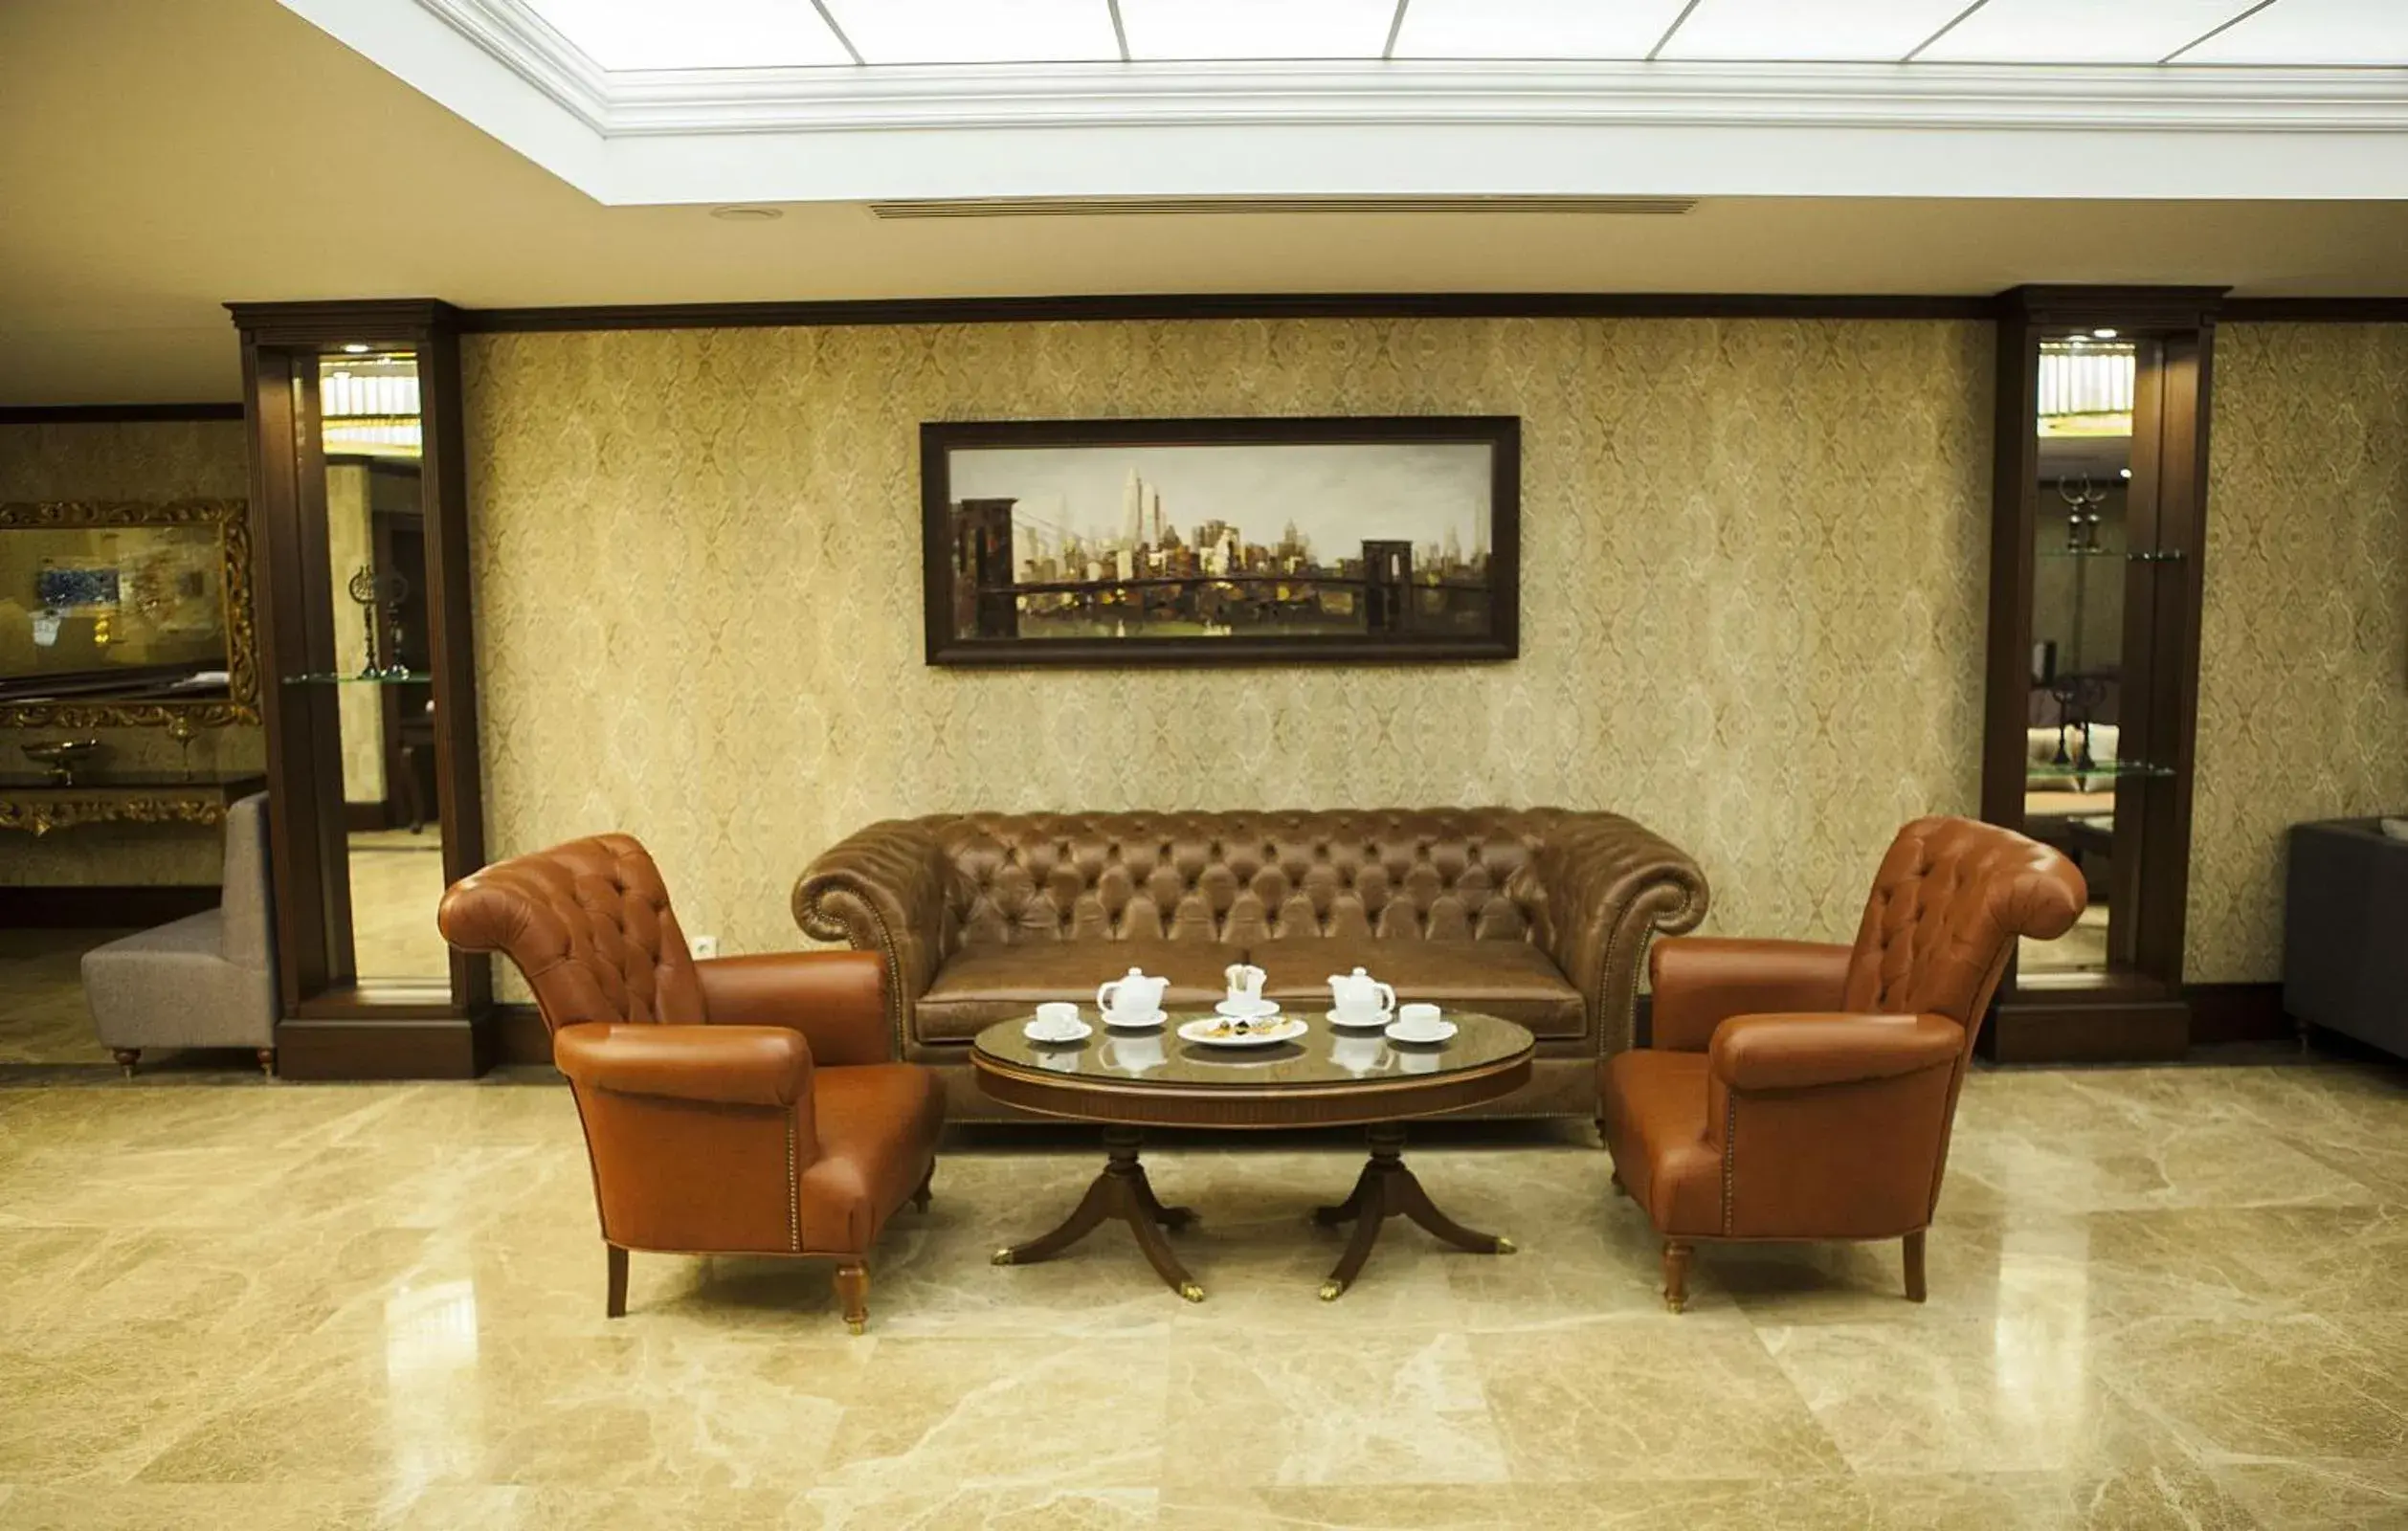 Lobby or reception, Lobby/Reception in Bilek Istanbul Hotel